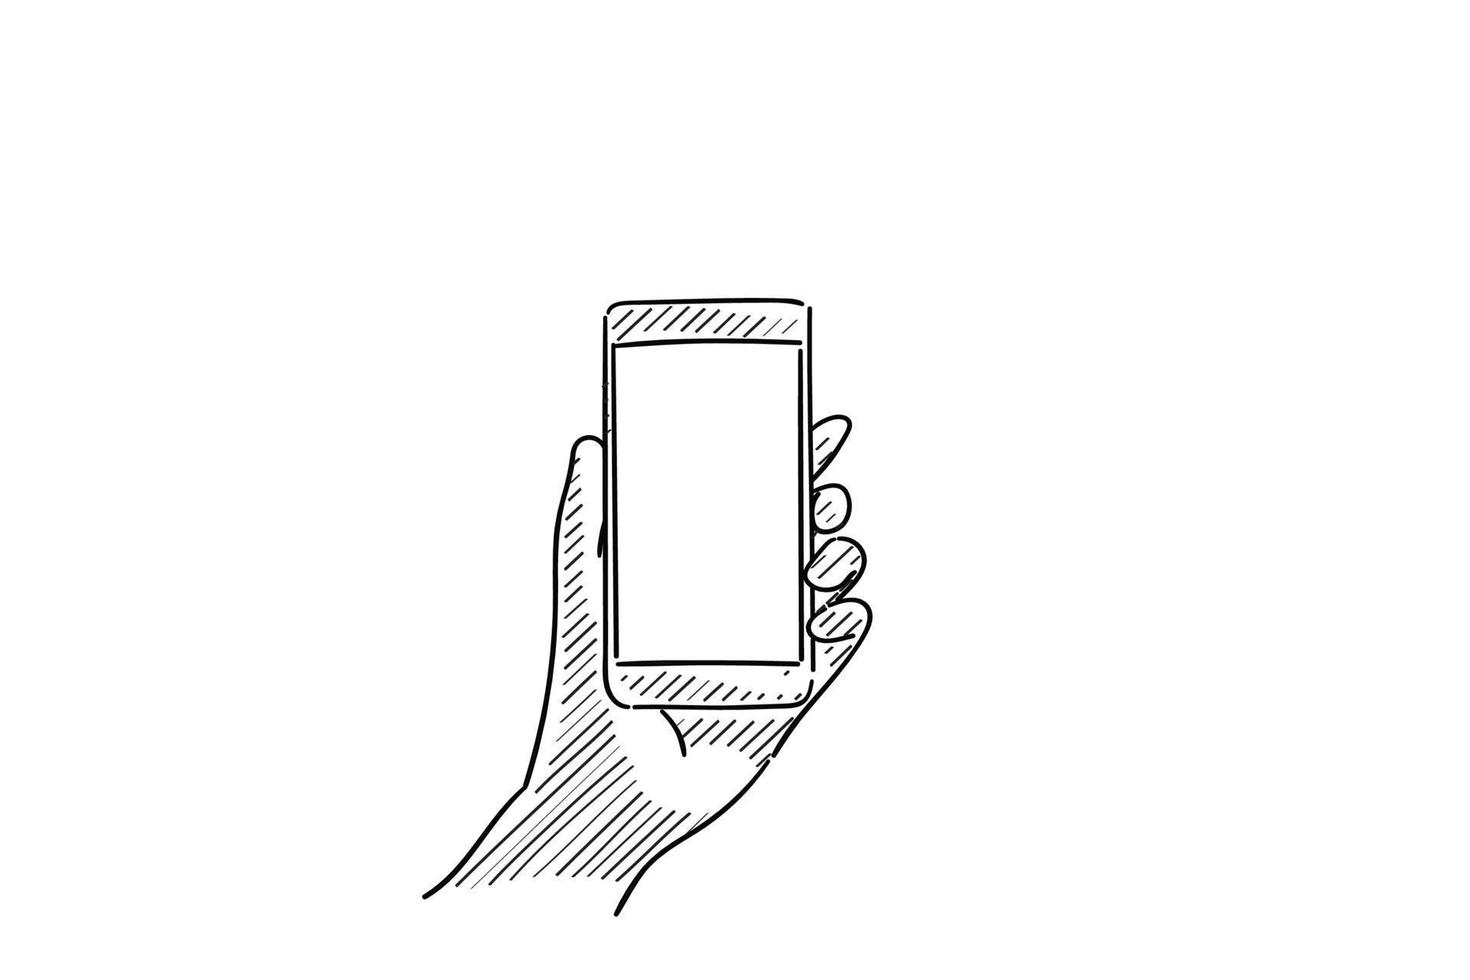 linkerhand met behulp van mobiele telefoon, met leeg scherm voor copyspace - vectorillustratie schets hand getekend met zwarte lijnen, geïsoleerd op een witte achtergrond vector